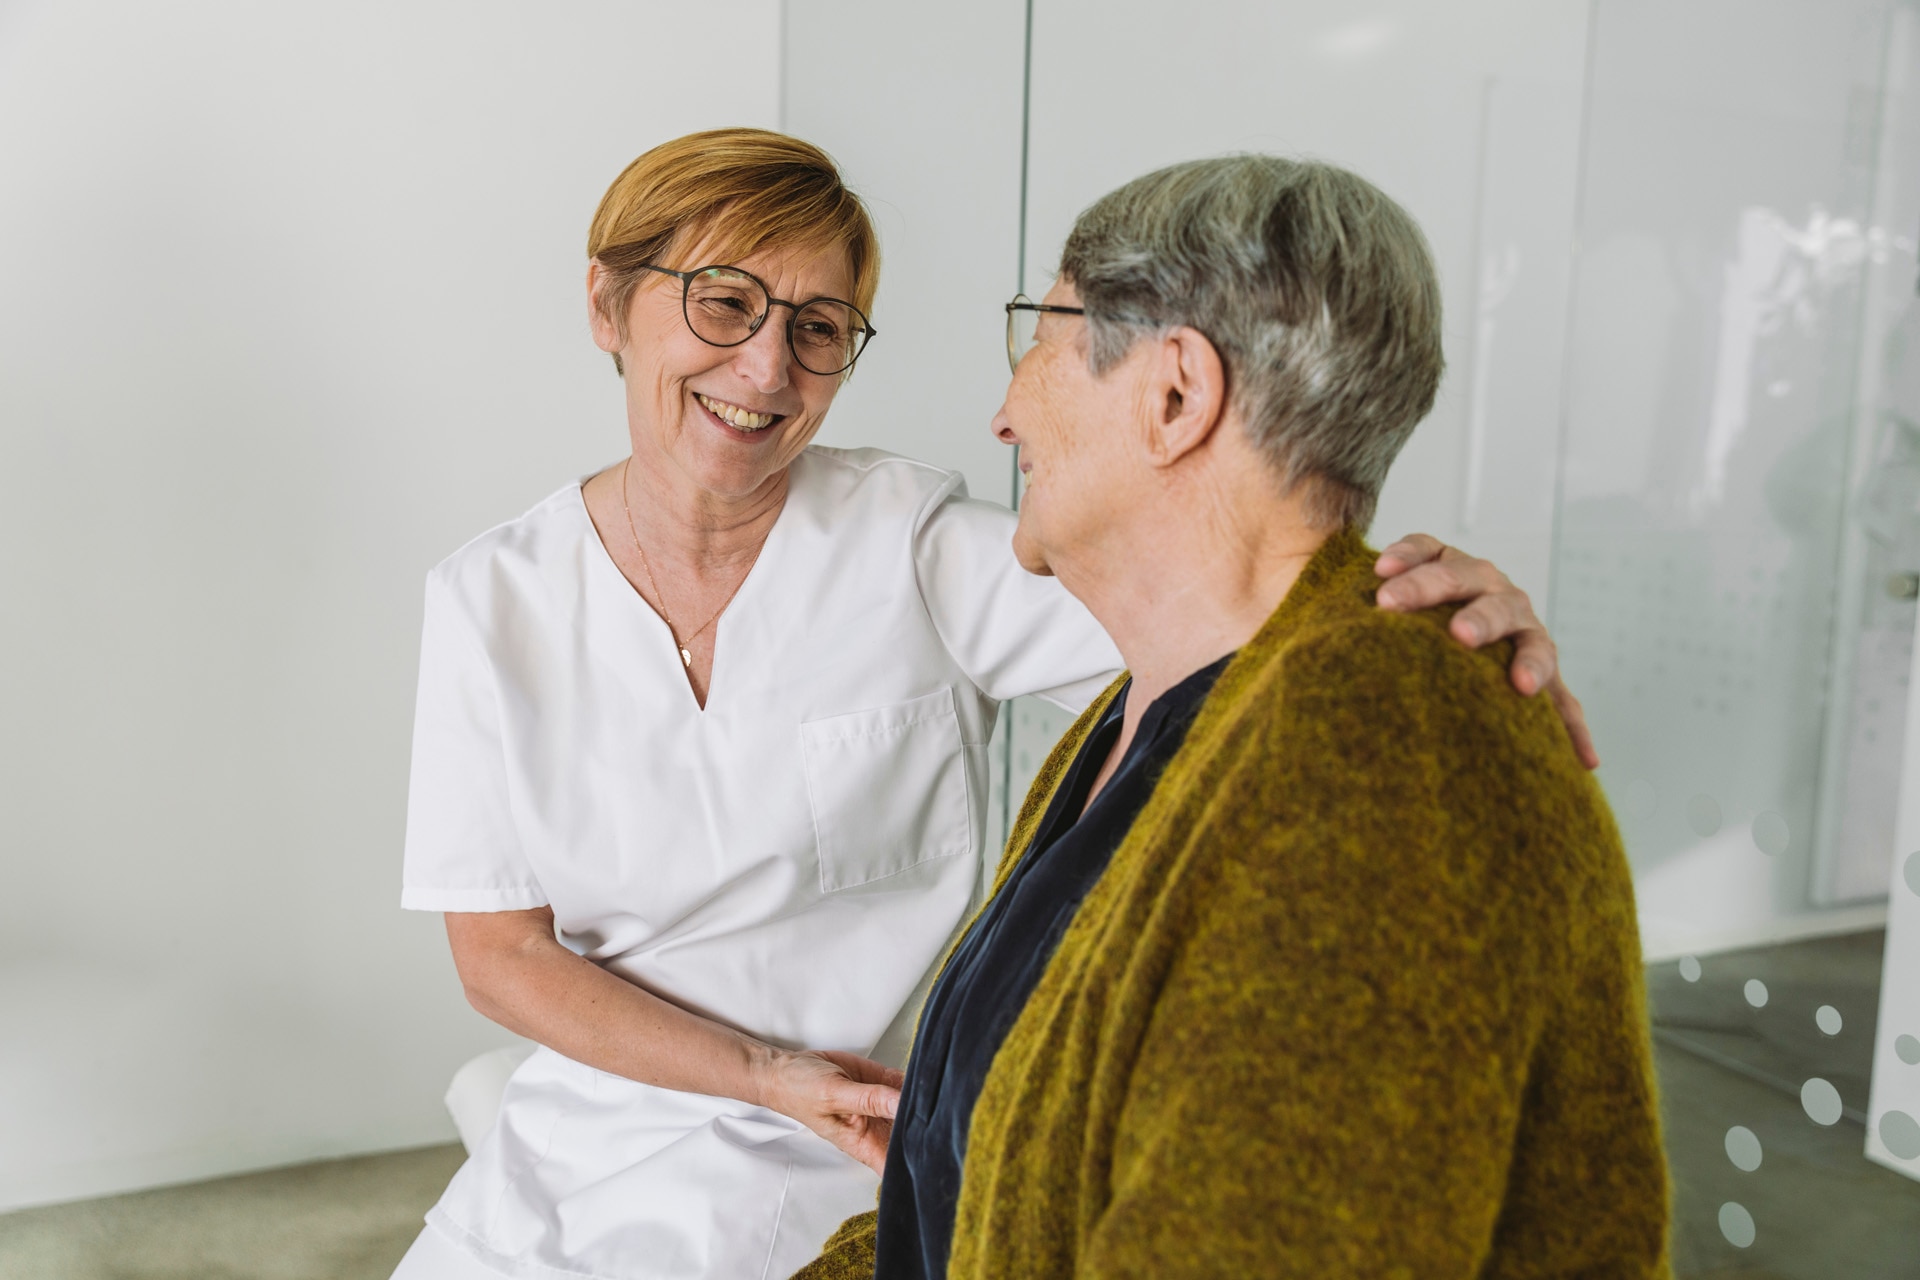 Lægens assistent opmuntrer ældre patient i praksissen.